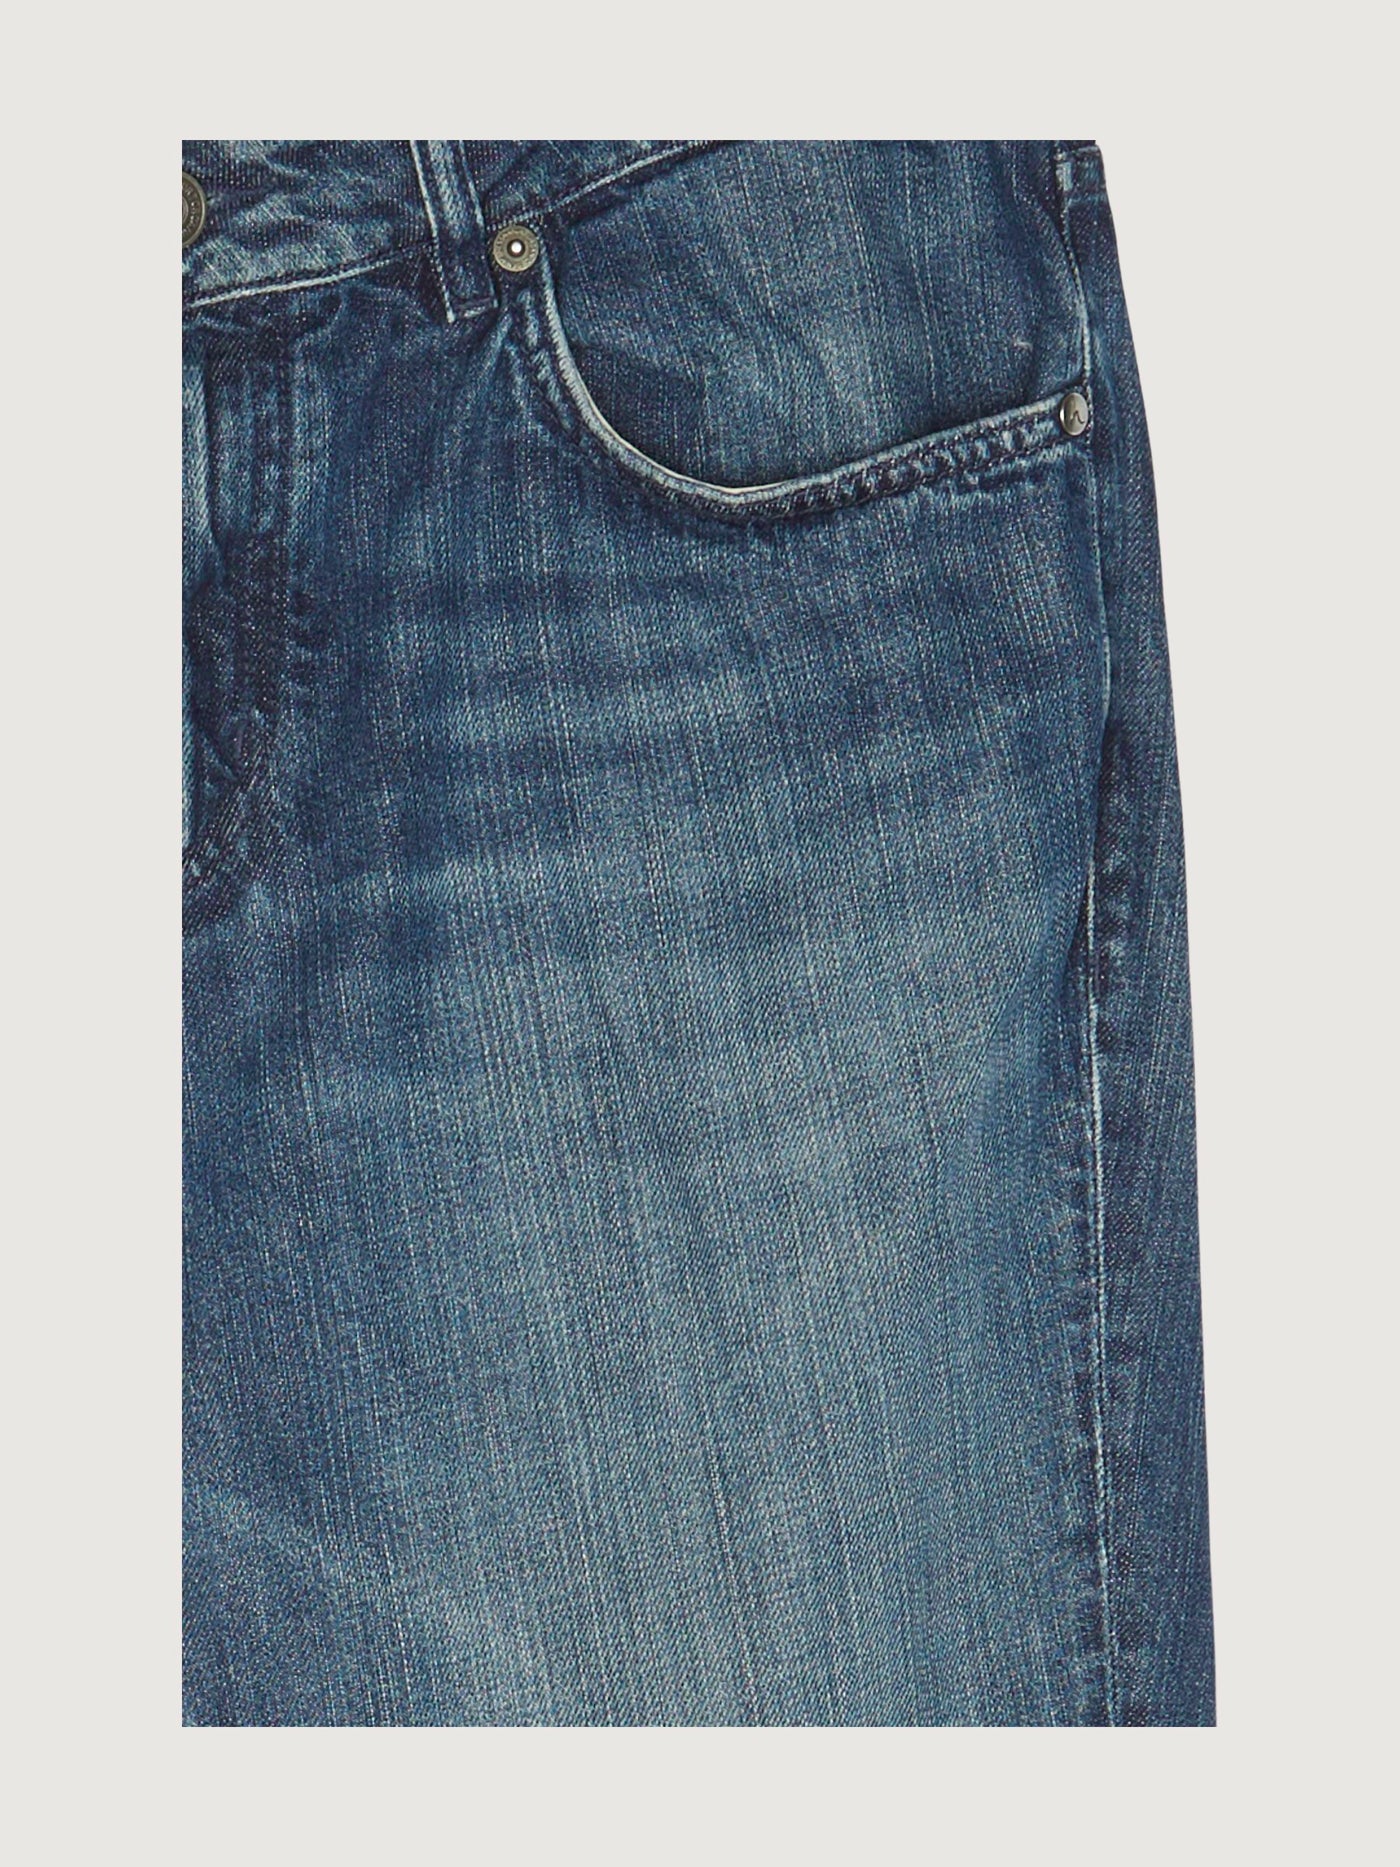 Secondhand Herren Jeans Straight Fit aus reinem Bio-Denim